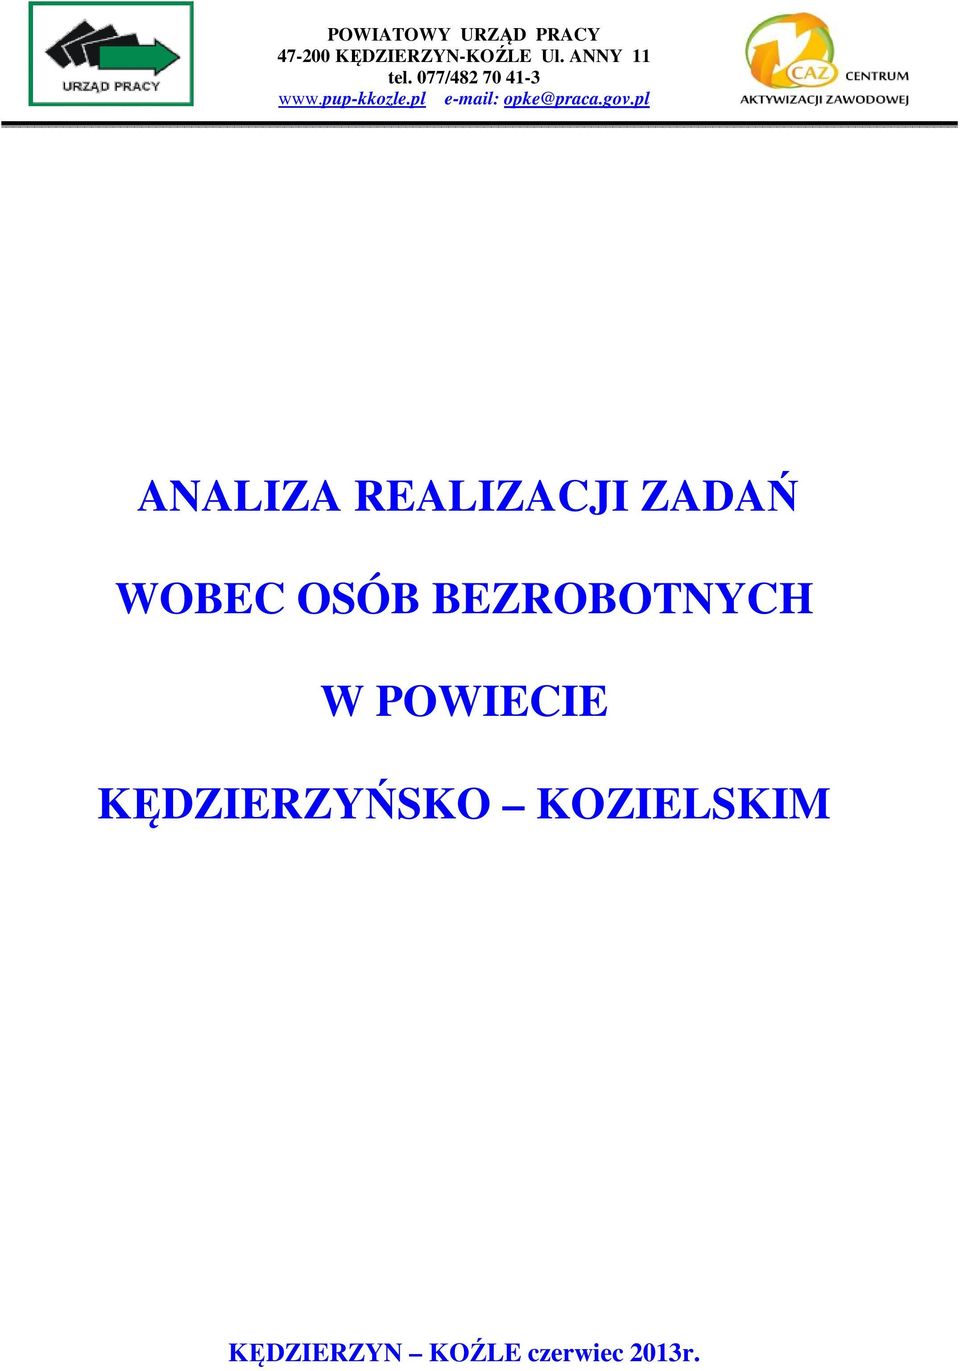 pl e-mail: opke@praca.gov.